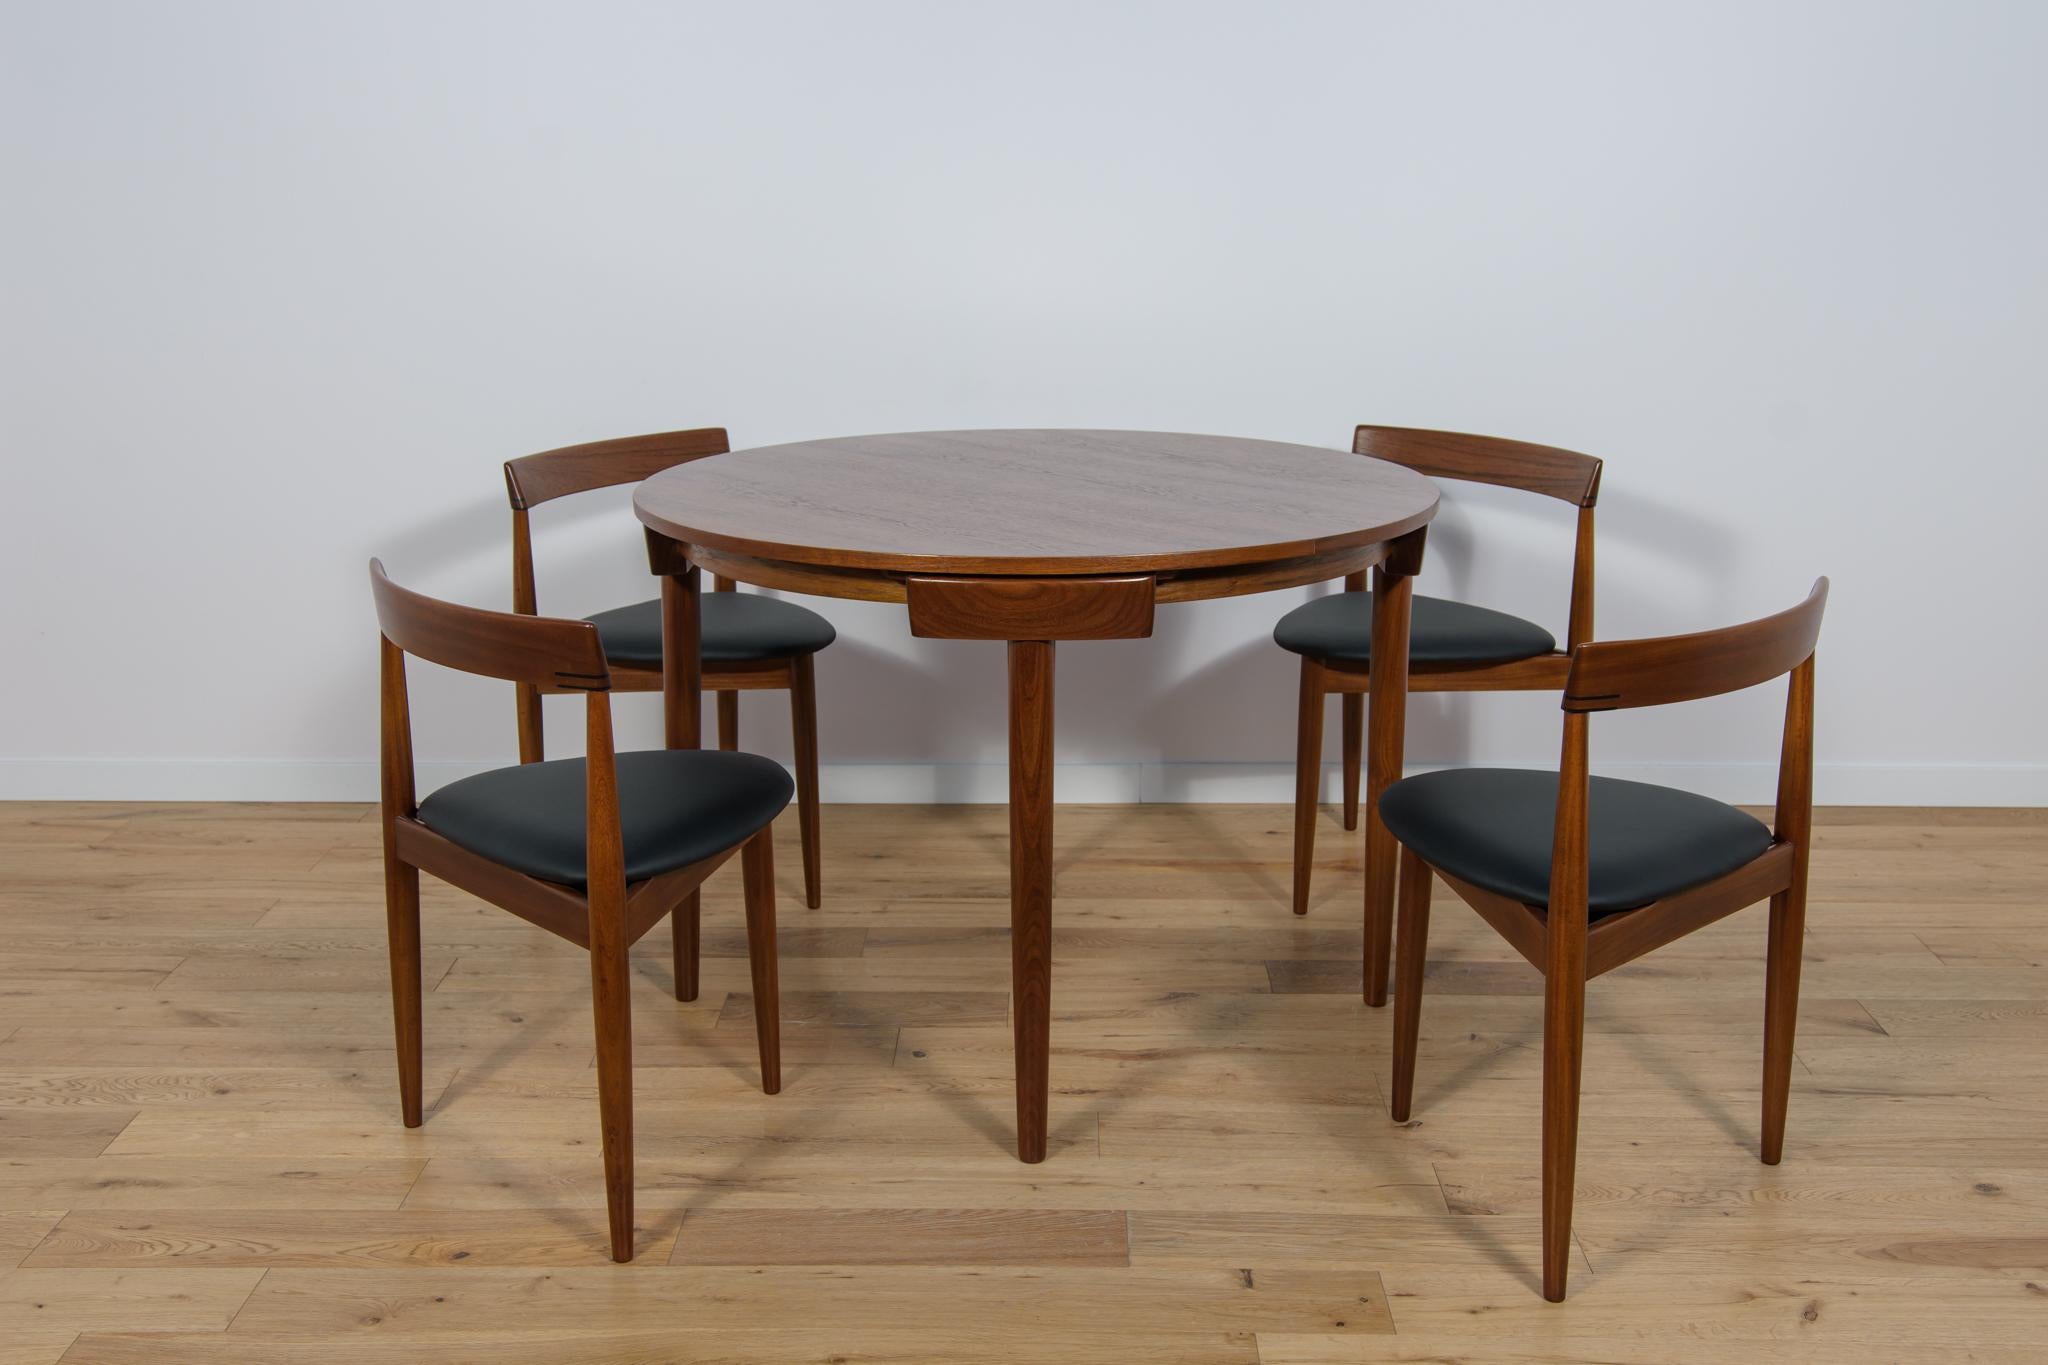 Fabriqué par Frem Rojle au Danemark et conçu par Hans Olsen. Les chaises sont dotées d'une structure en teck et d'une assise triangulaire recouverte d'un nouveau cuir naturel noir. Les objets en bois ont été nettoyés de l'ancienne surface et peints